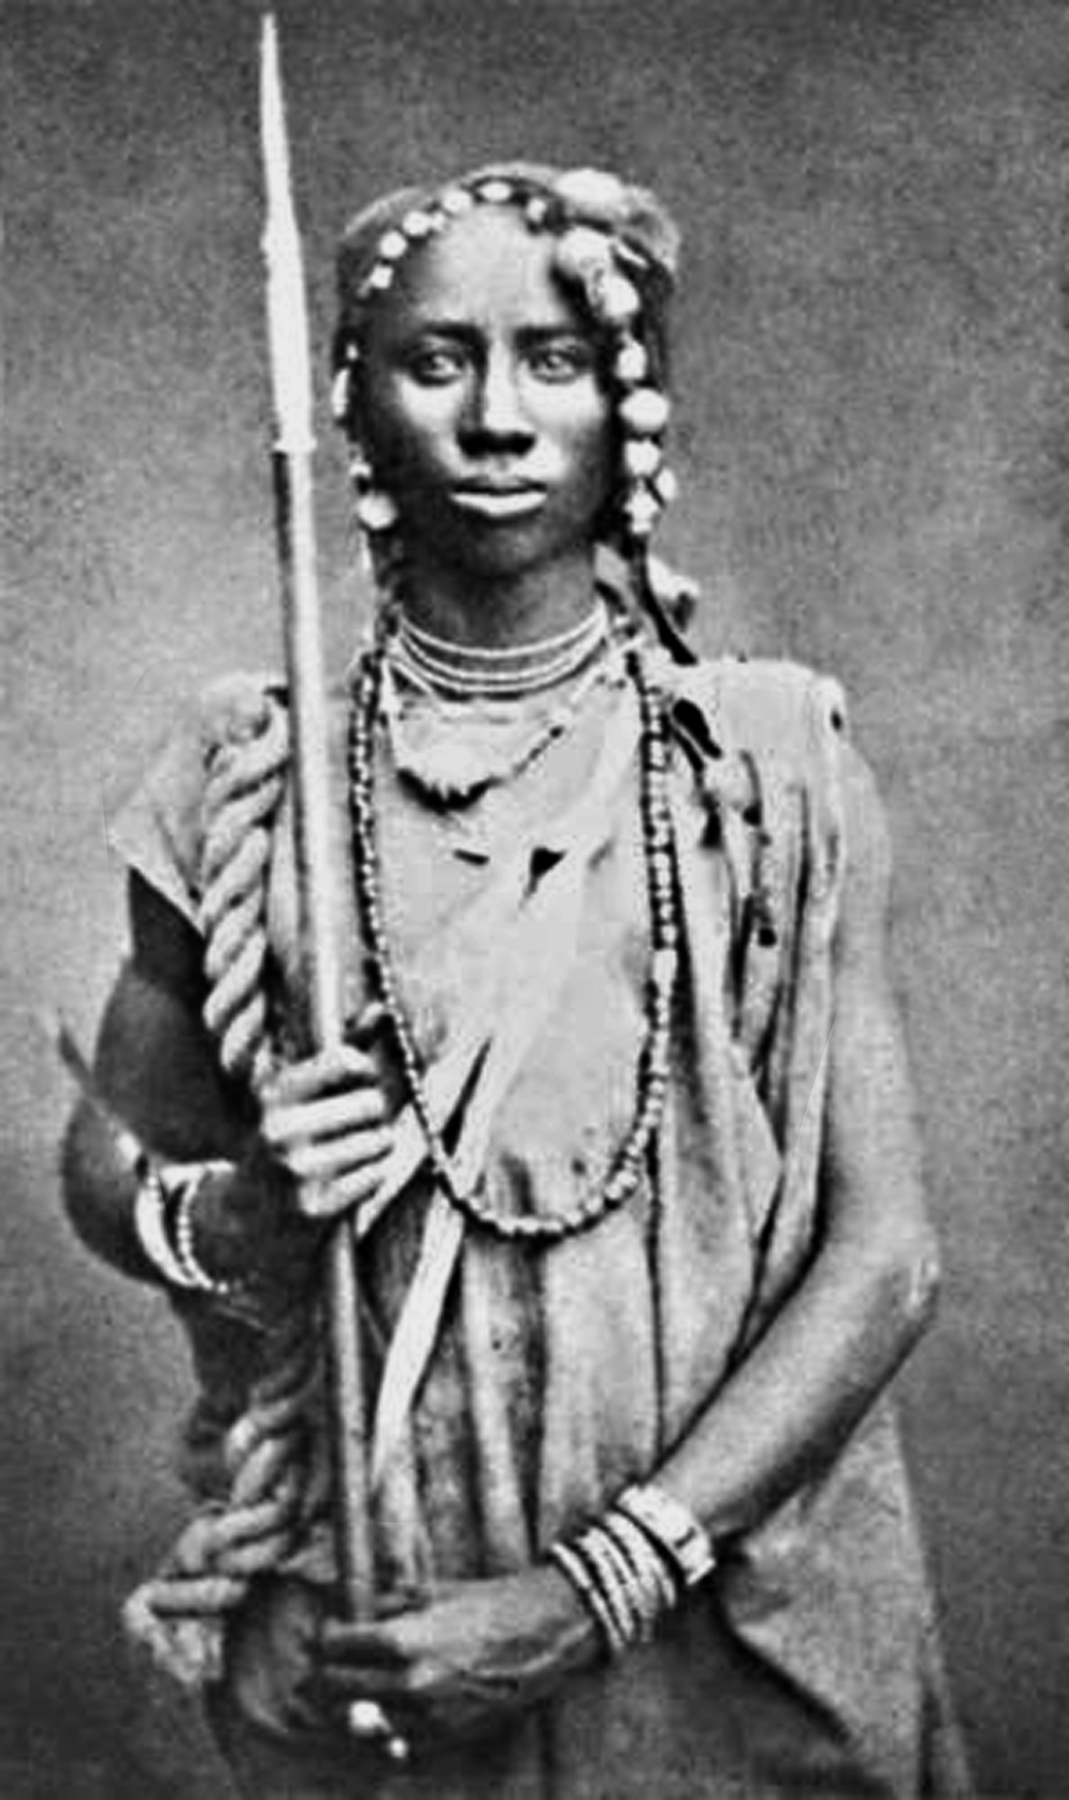 Fotografia em preto e branco. Uma mulher vista de frente, com cabelos escuros e trançados, vestindo uma camisa clara e colares sobre o peito e ao redor do pescoço, segurando uma lança com uma das mãos.